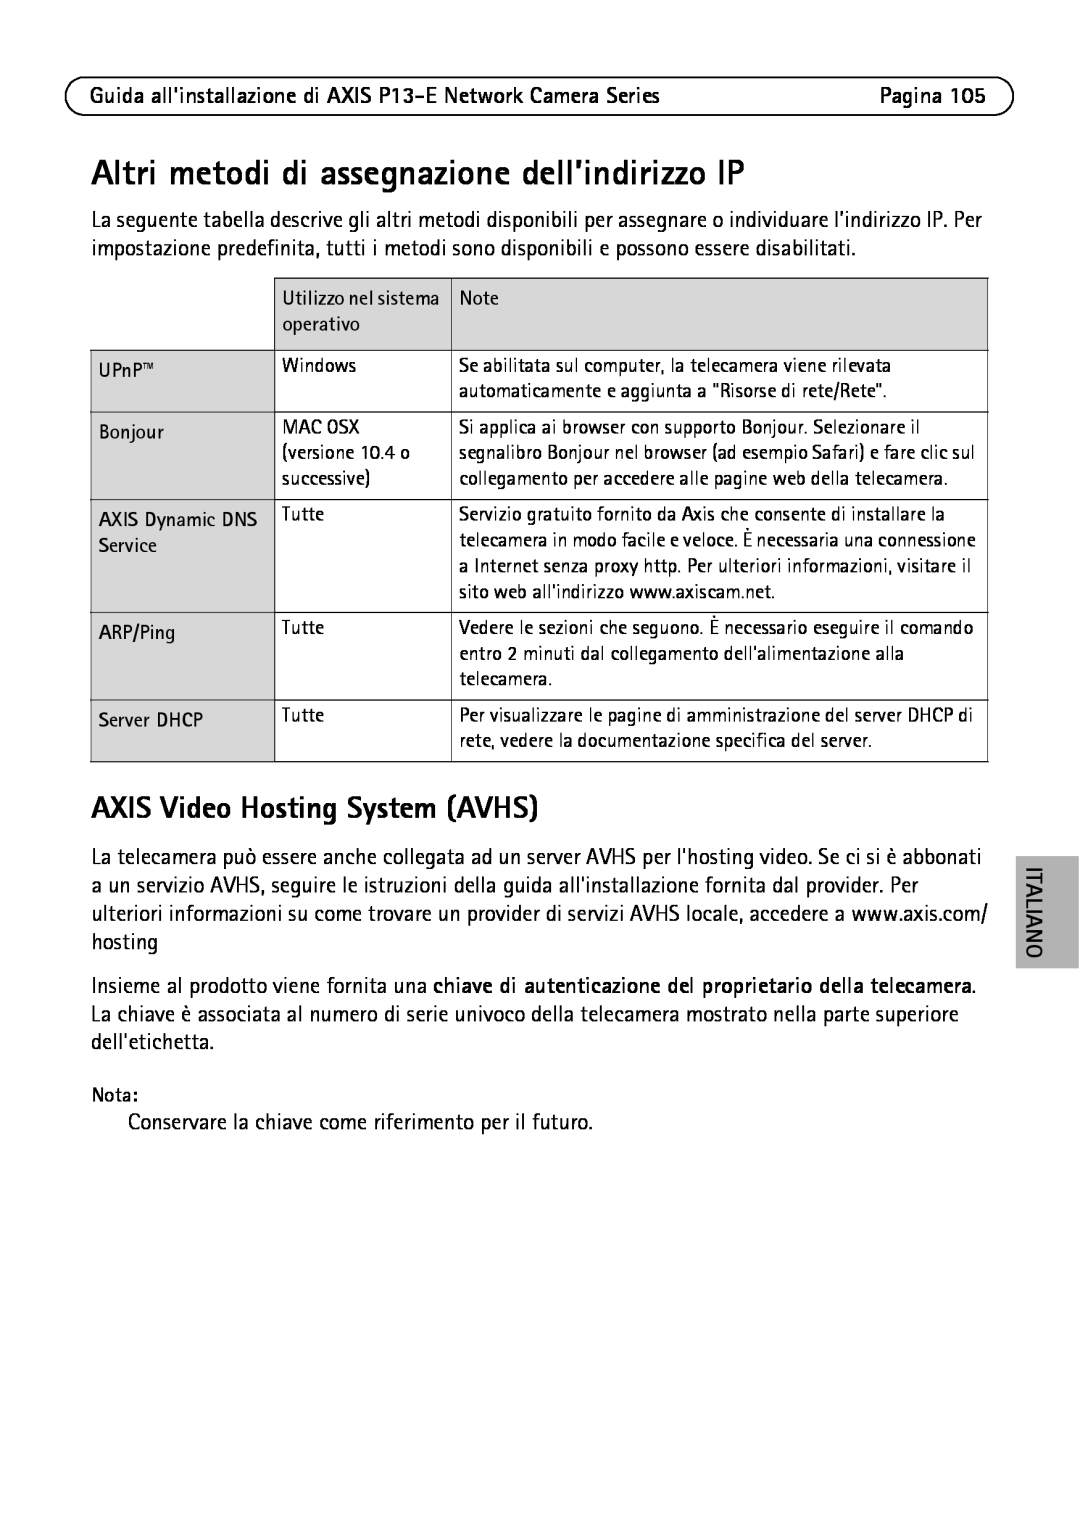 Axis Communications P1343-E, P1347-E, P13-E Altri metodi di assegnazione dell’indirizzo IP, AXIS Video Hosting System AVHS 